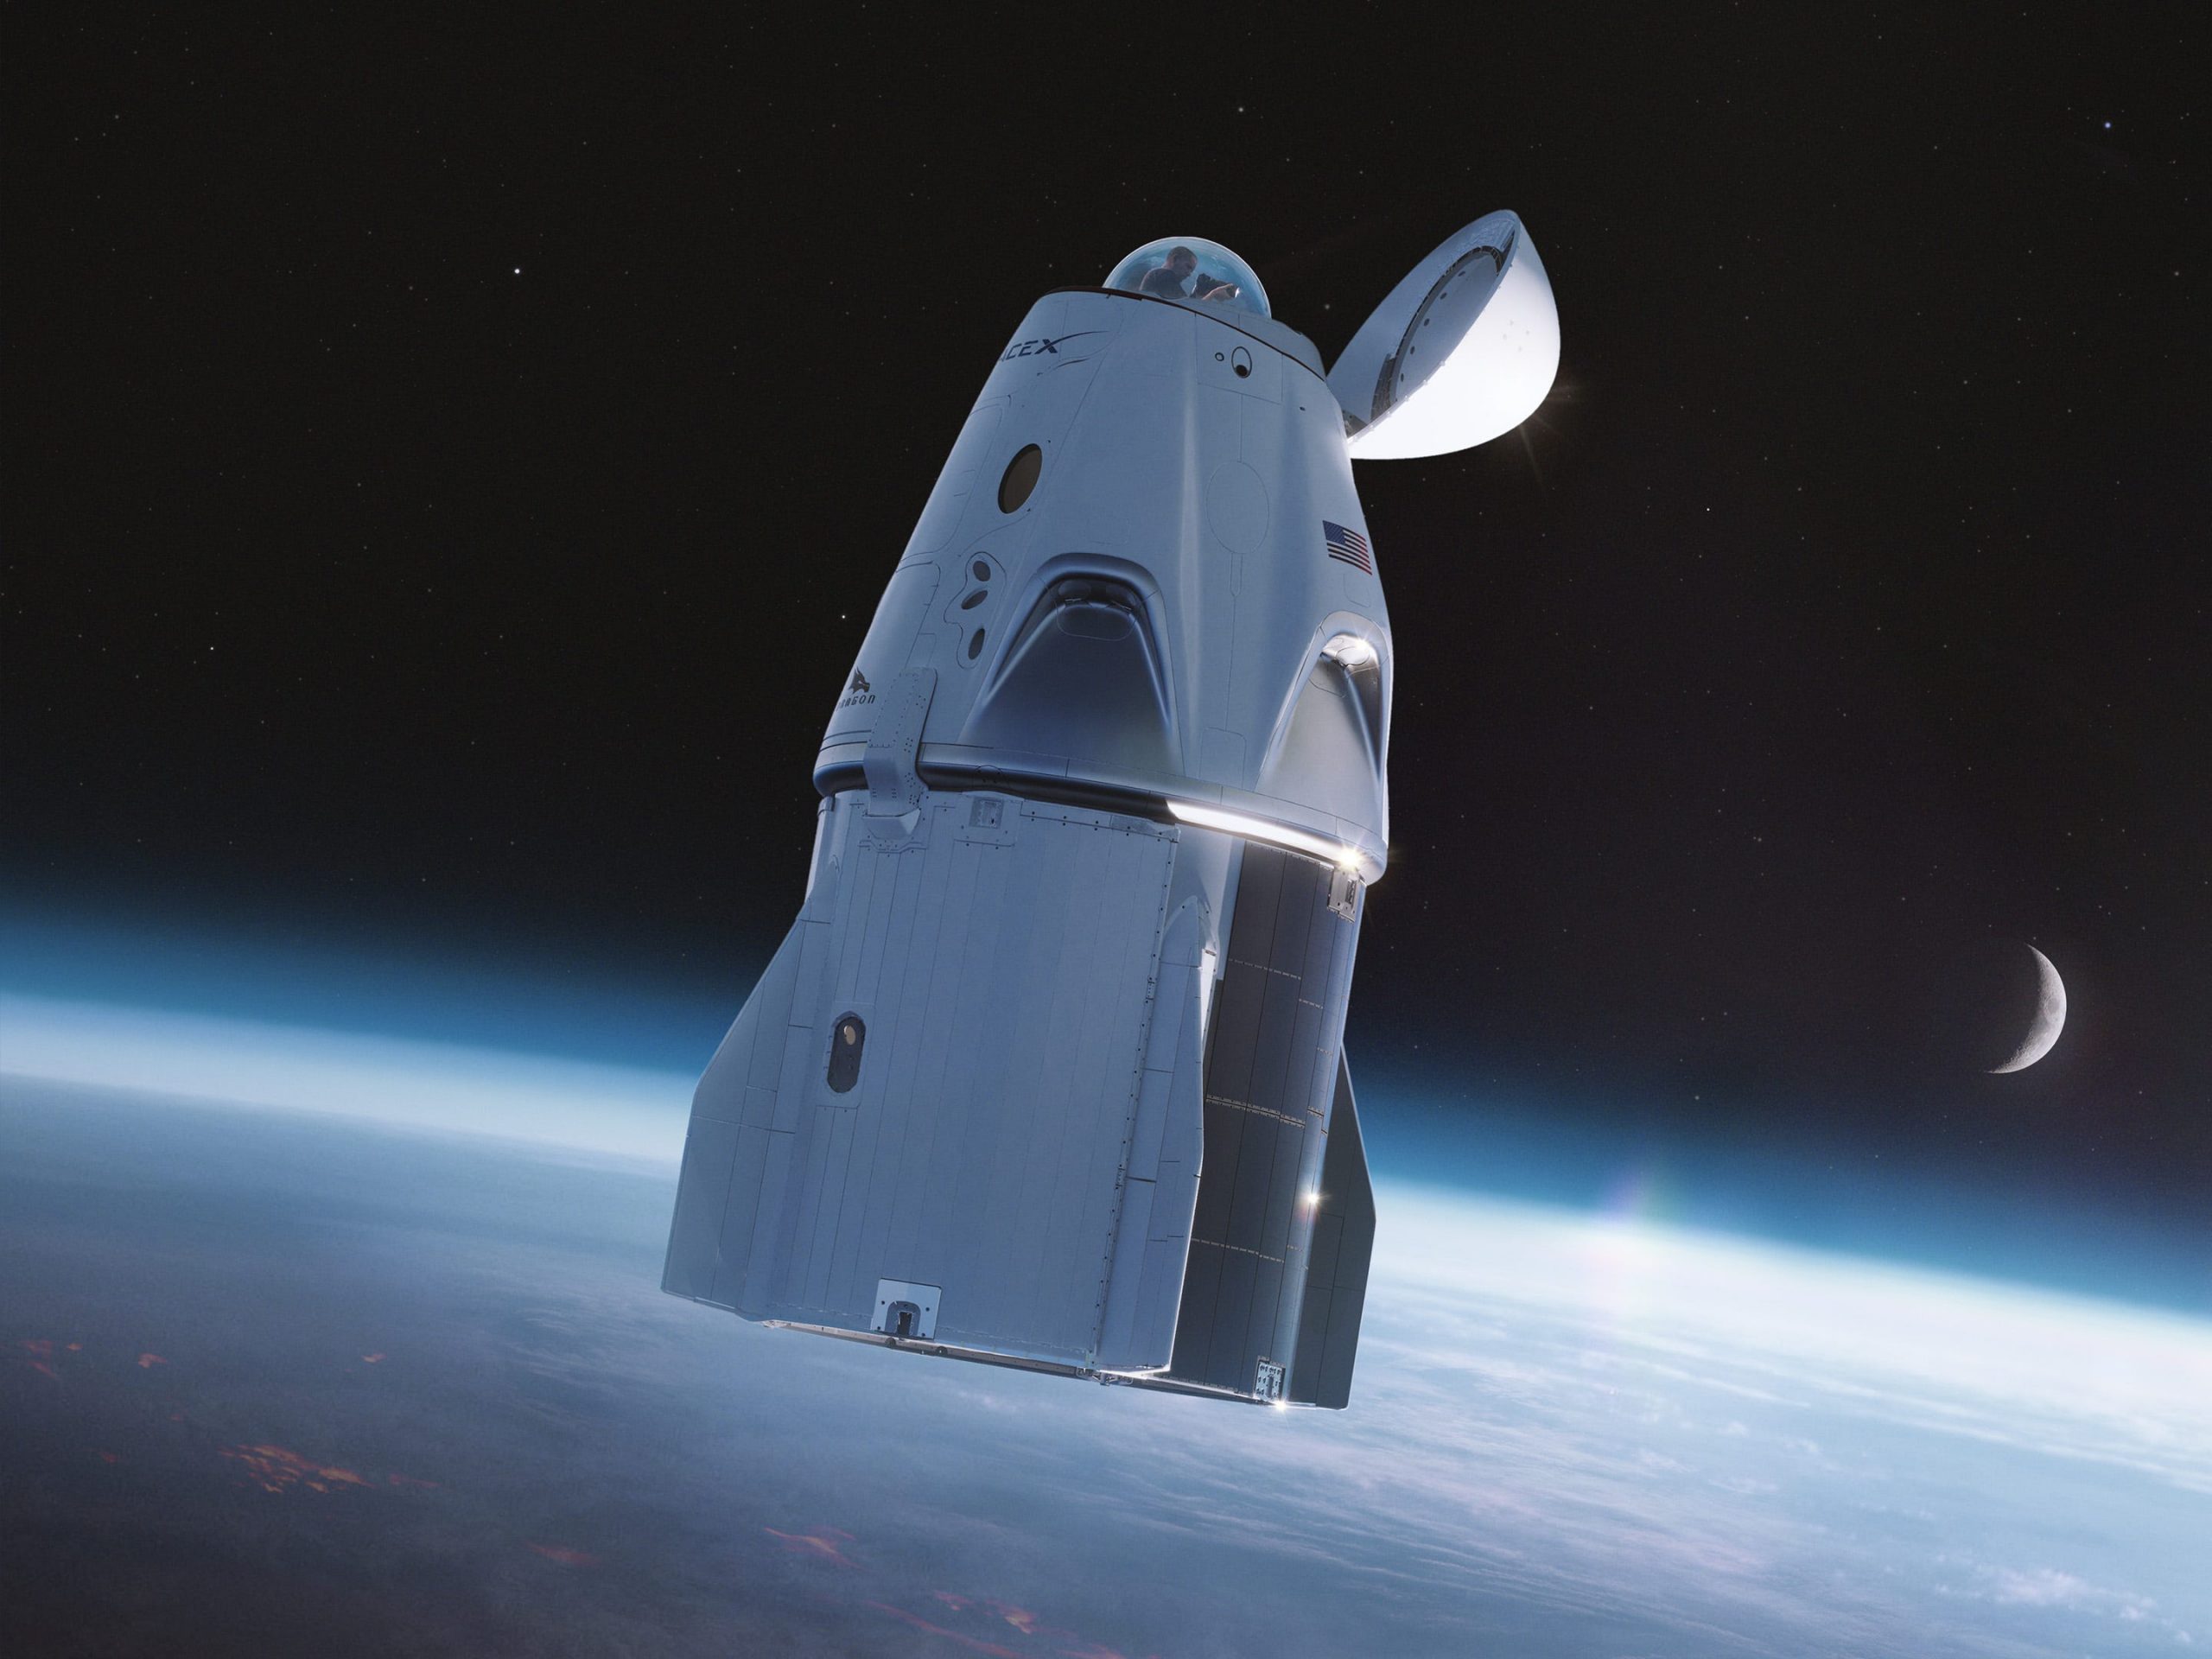 SpaceX Crew Dragon-ruimteschip met een glazen koepel of "cupola" op de neus - met daarin het toilet. Afbeelding: SpaceX